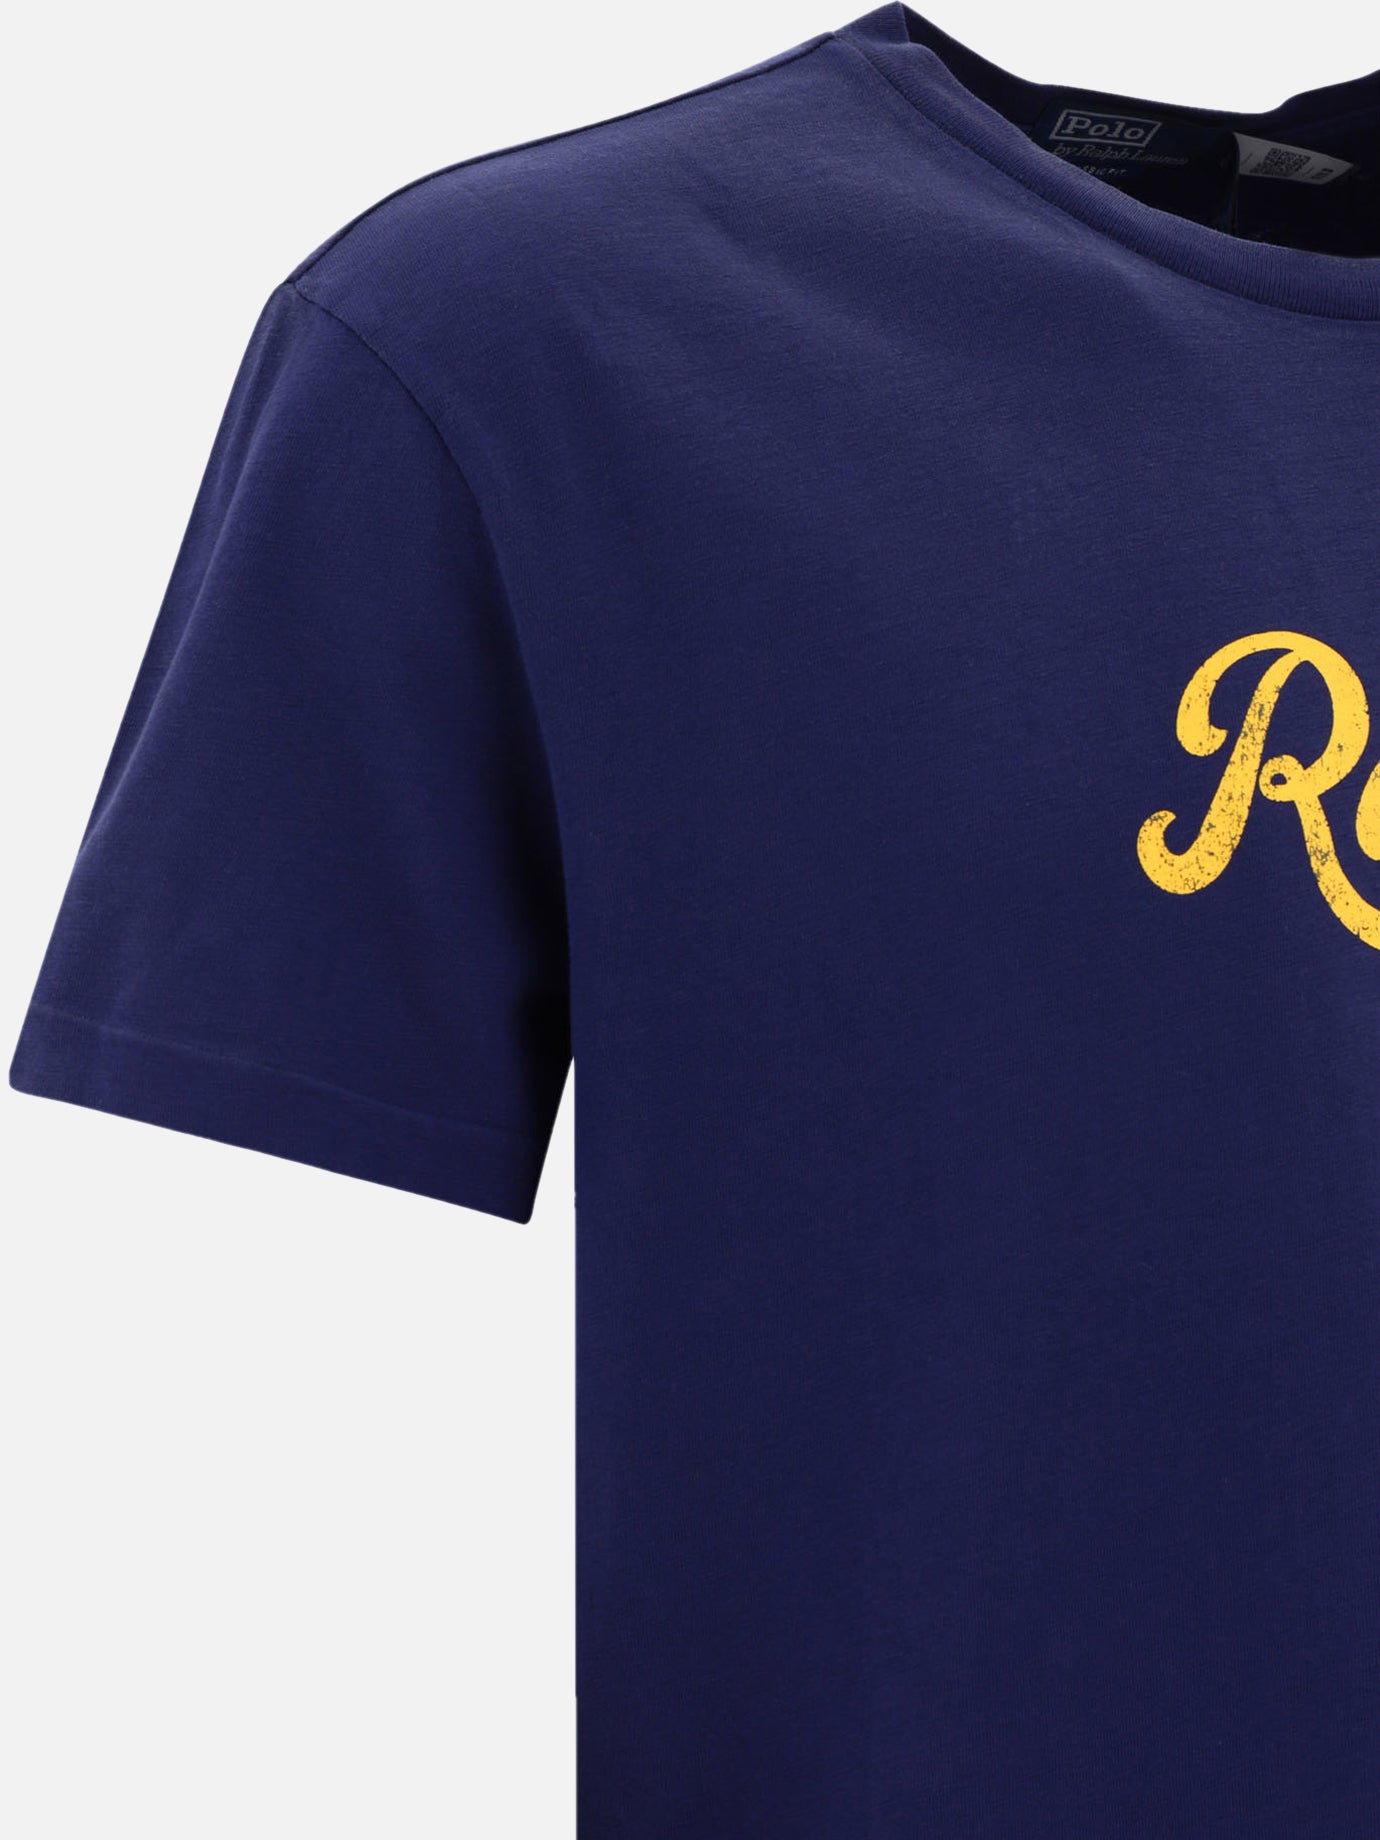 "Ralph" t-shirt